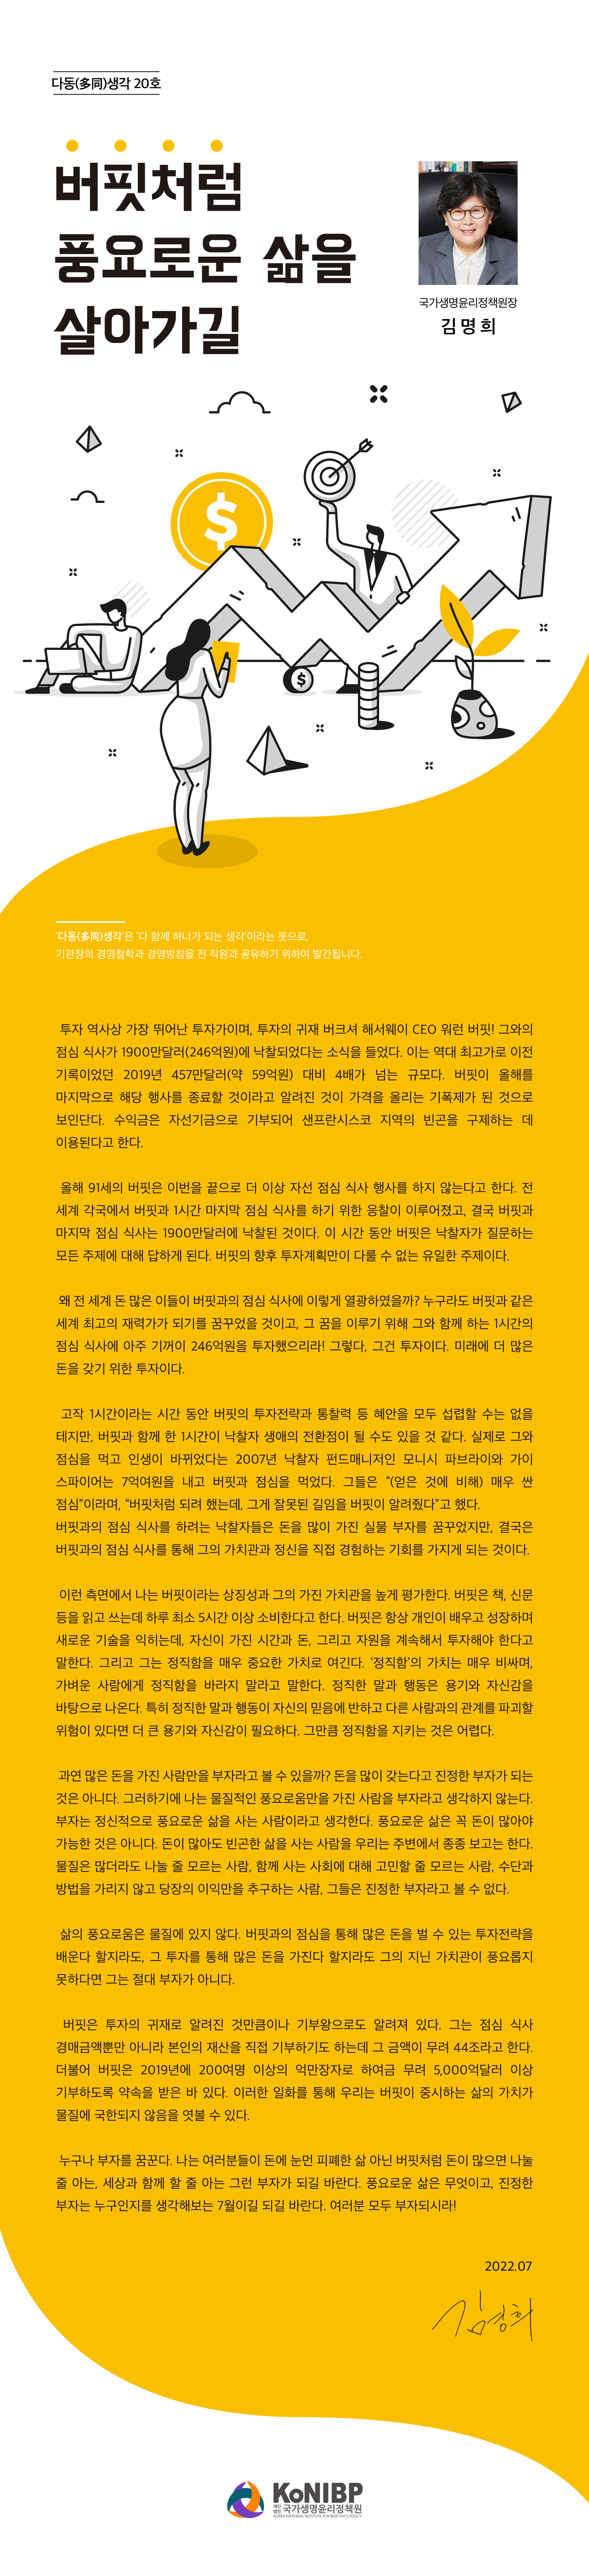 2206-국가생명윤리정책원-다동생각-20호(최종).jpg